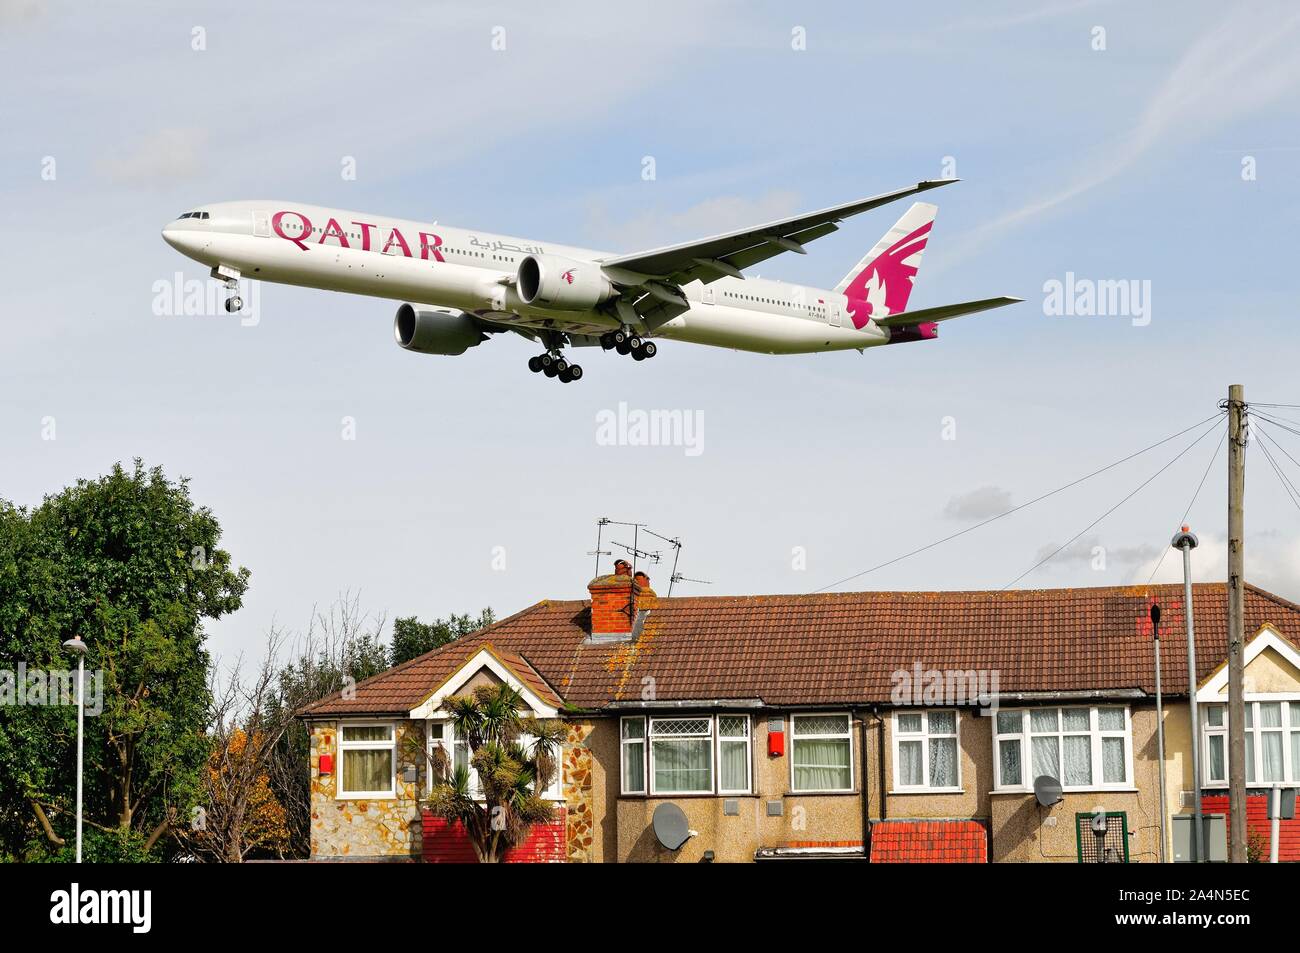 La Qatar Airways Boeing 777-300 jet volando a bassa quota sopra i tetti a Hatton Cross sul suo approccio di atterraggio a Heathrow Londra Inghilterra REGNO UNITO Foto Stock